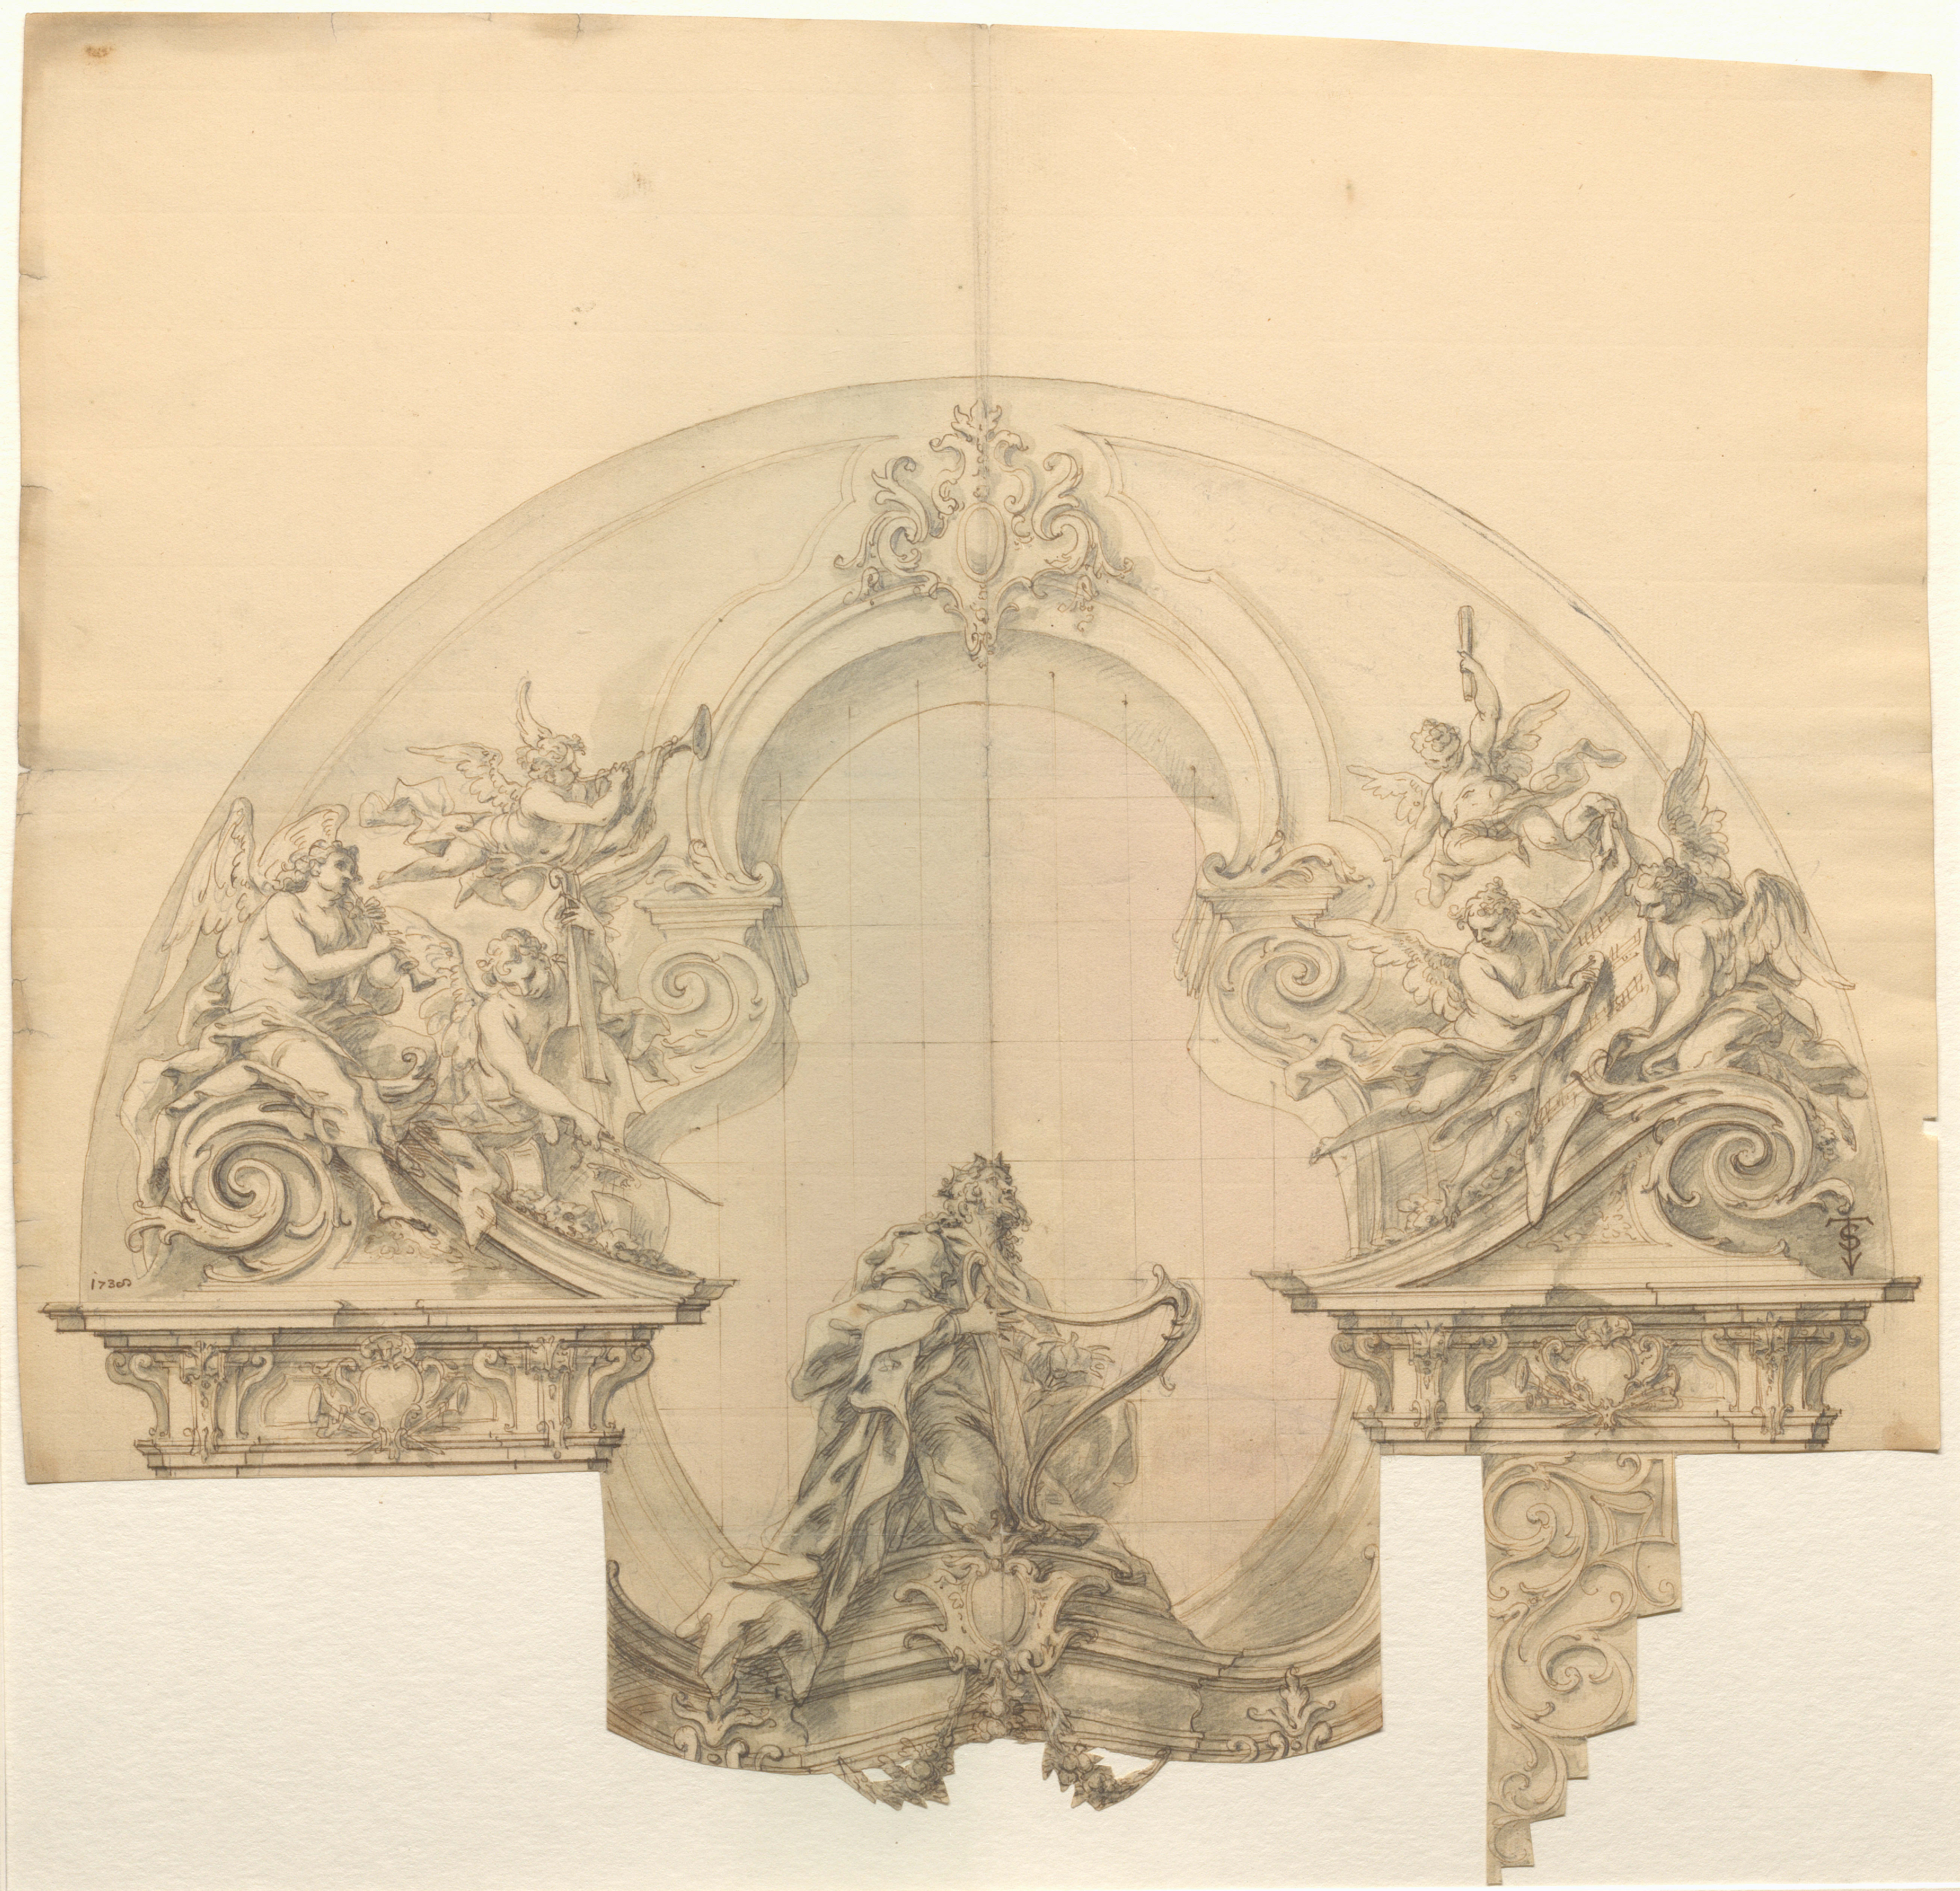 Barocke Neugestaltung der Orgel in München-St. Peter<br/>Entwurfszeichnung von Nikolaus Gottfried Stuber, 1738